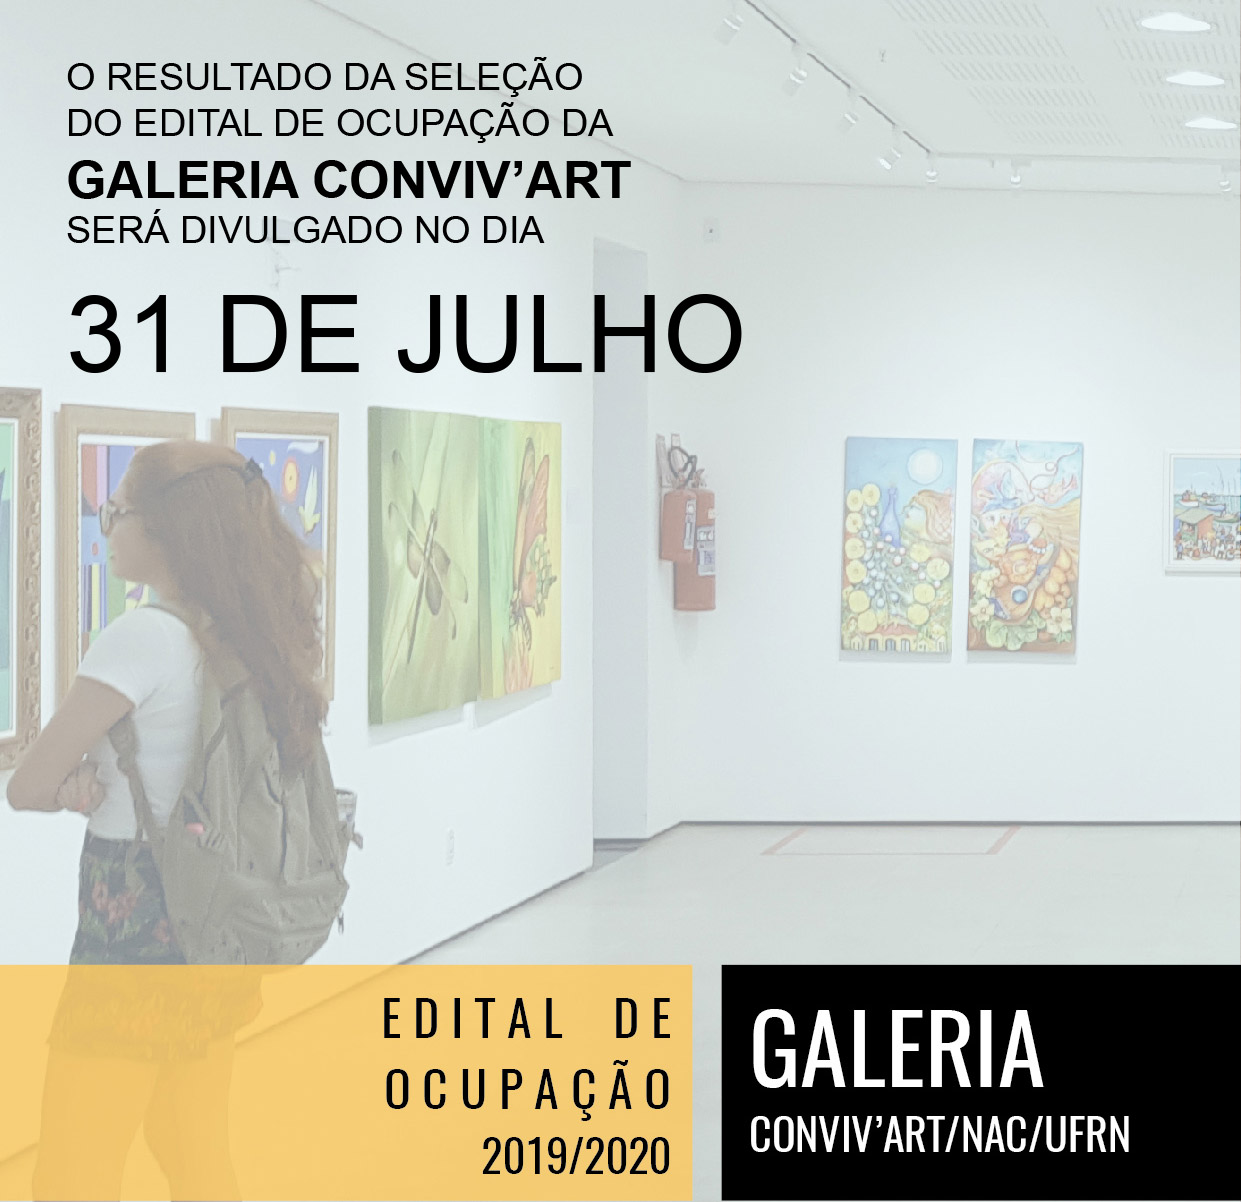 Resultado de divilgação EDITAL DE OCUPAÇÃO - GALERIA CONVIV'ART- Dia 31 de julho de 2019